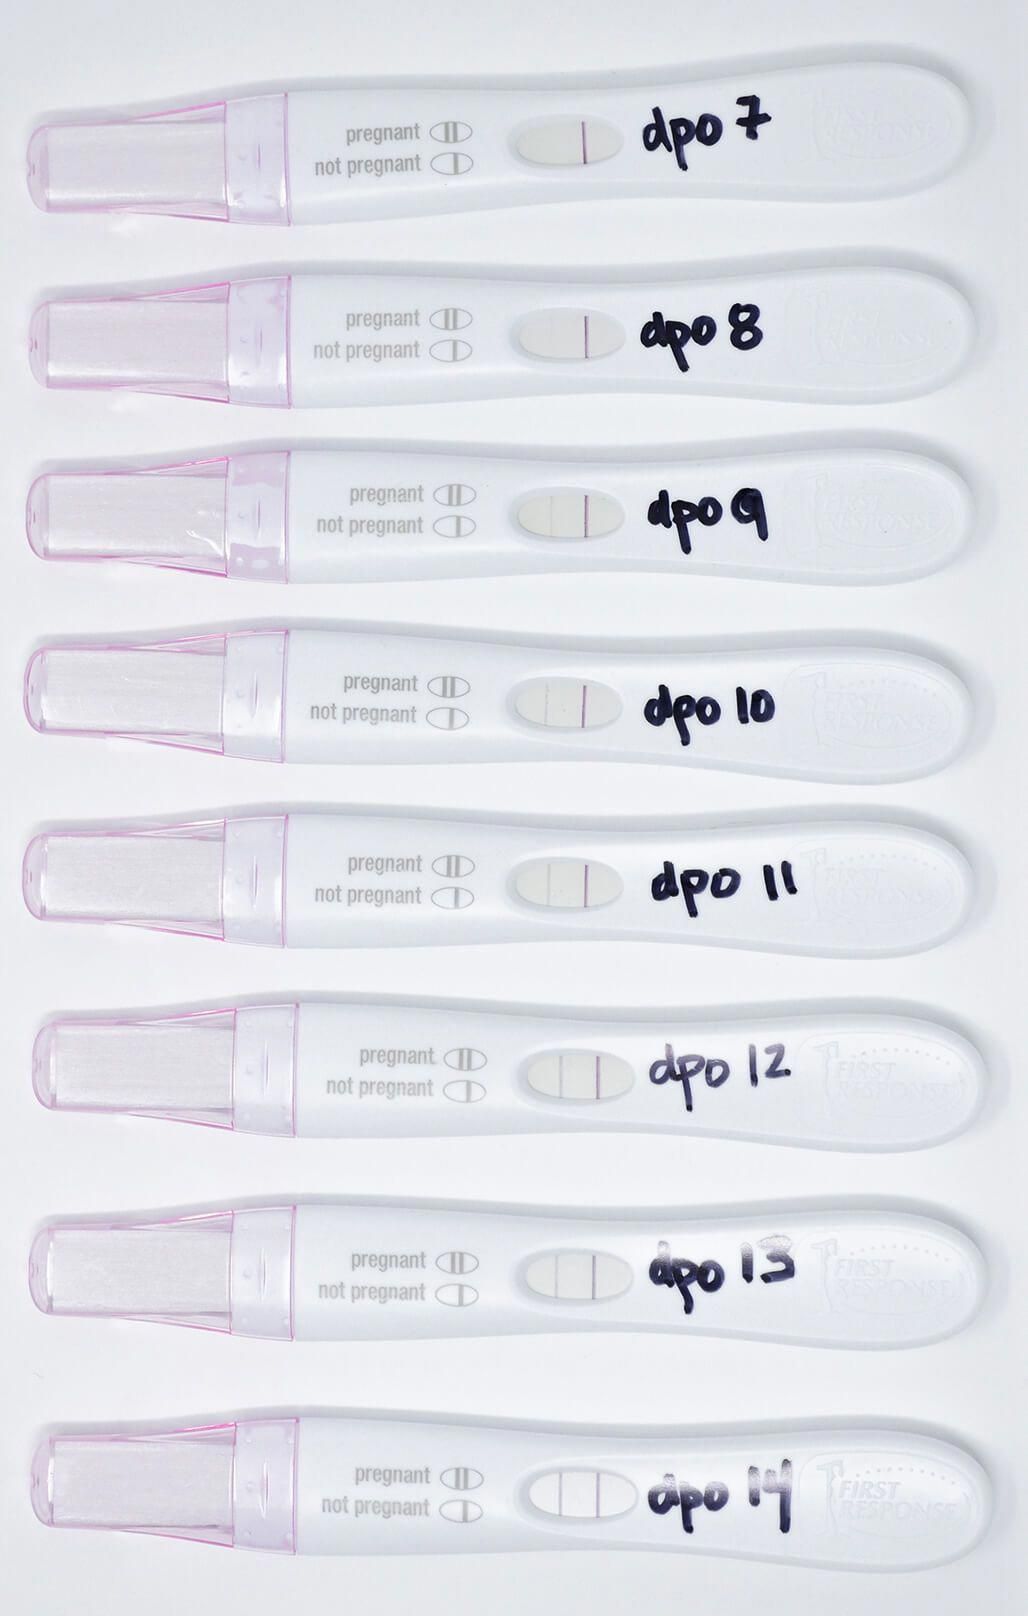 Dpo Positive Pregnancy Test Chart